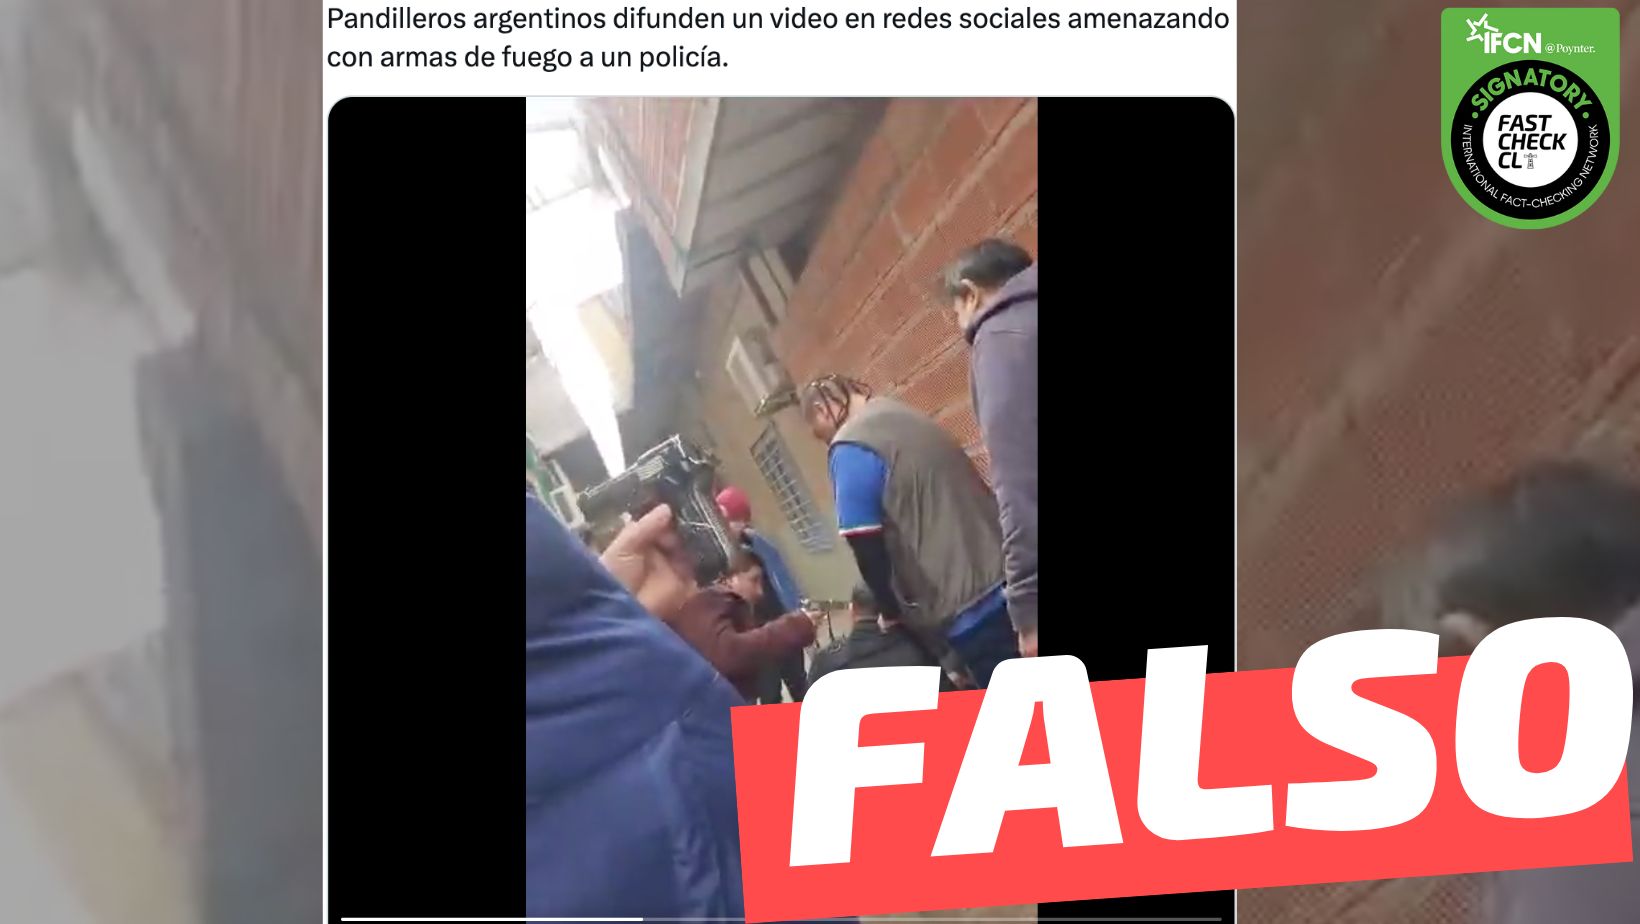 You are currently viewing “Pandilleros argentinos difunden un video en redes sociales amenazando con armas de fuego a un policía”: #Falso